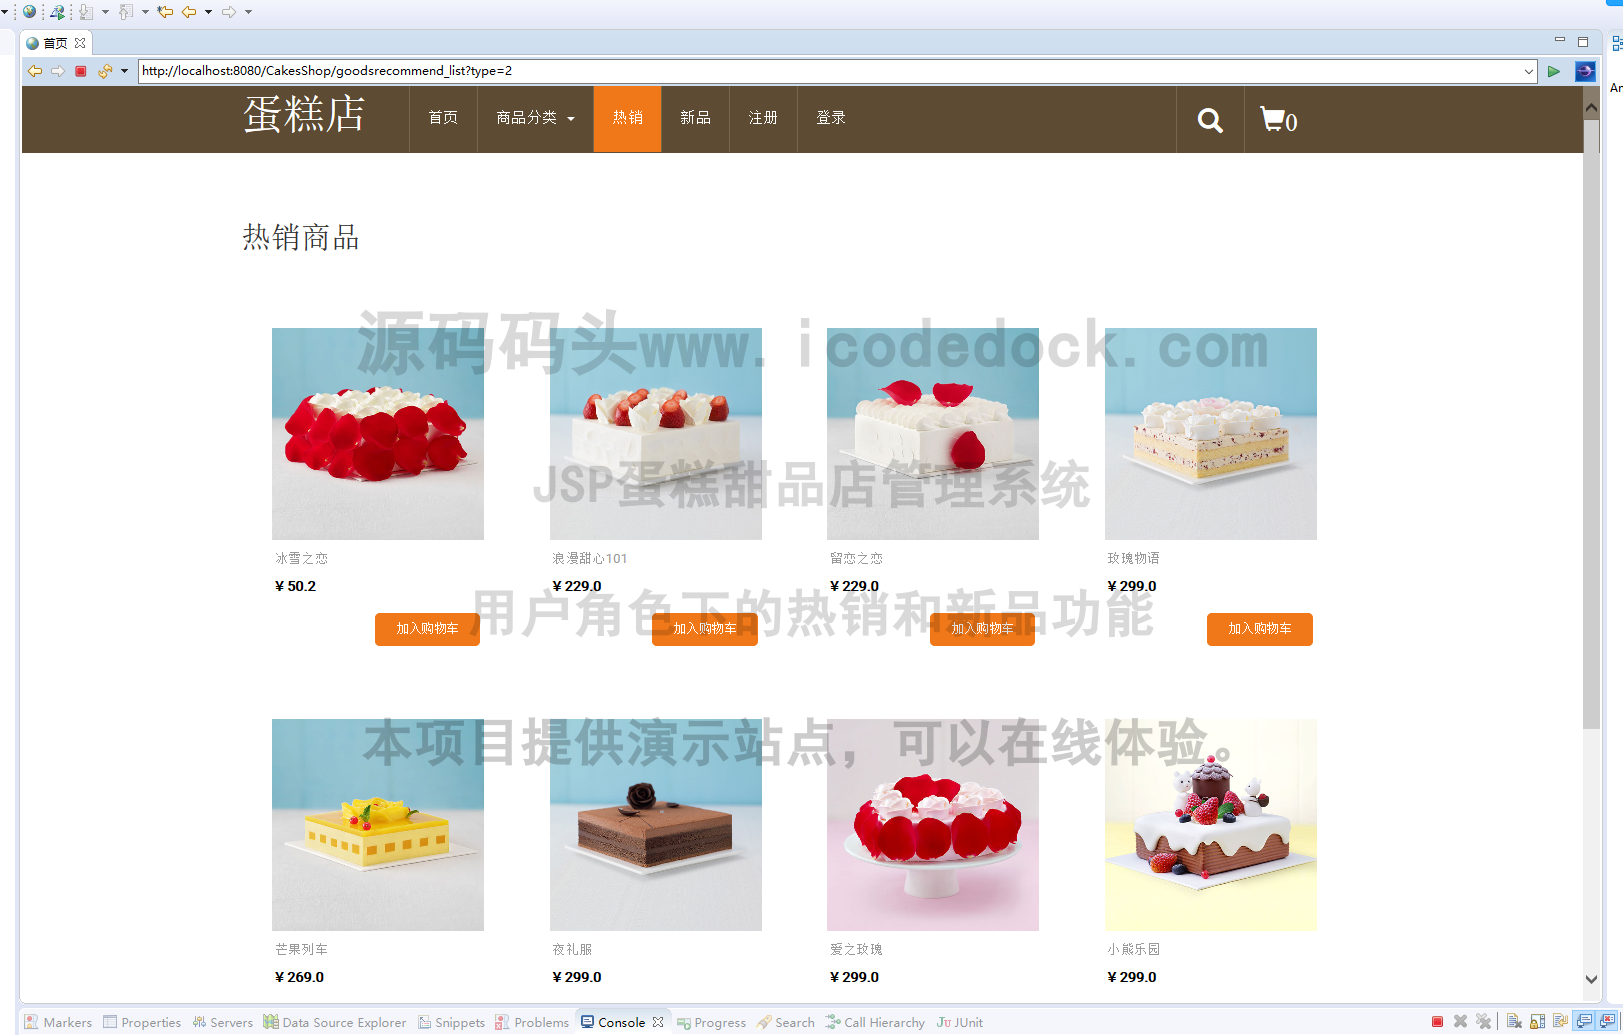 源码码头-JSP蛋糕甜品店管理系统-用户角色-热销和新品